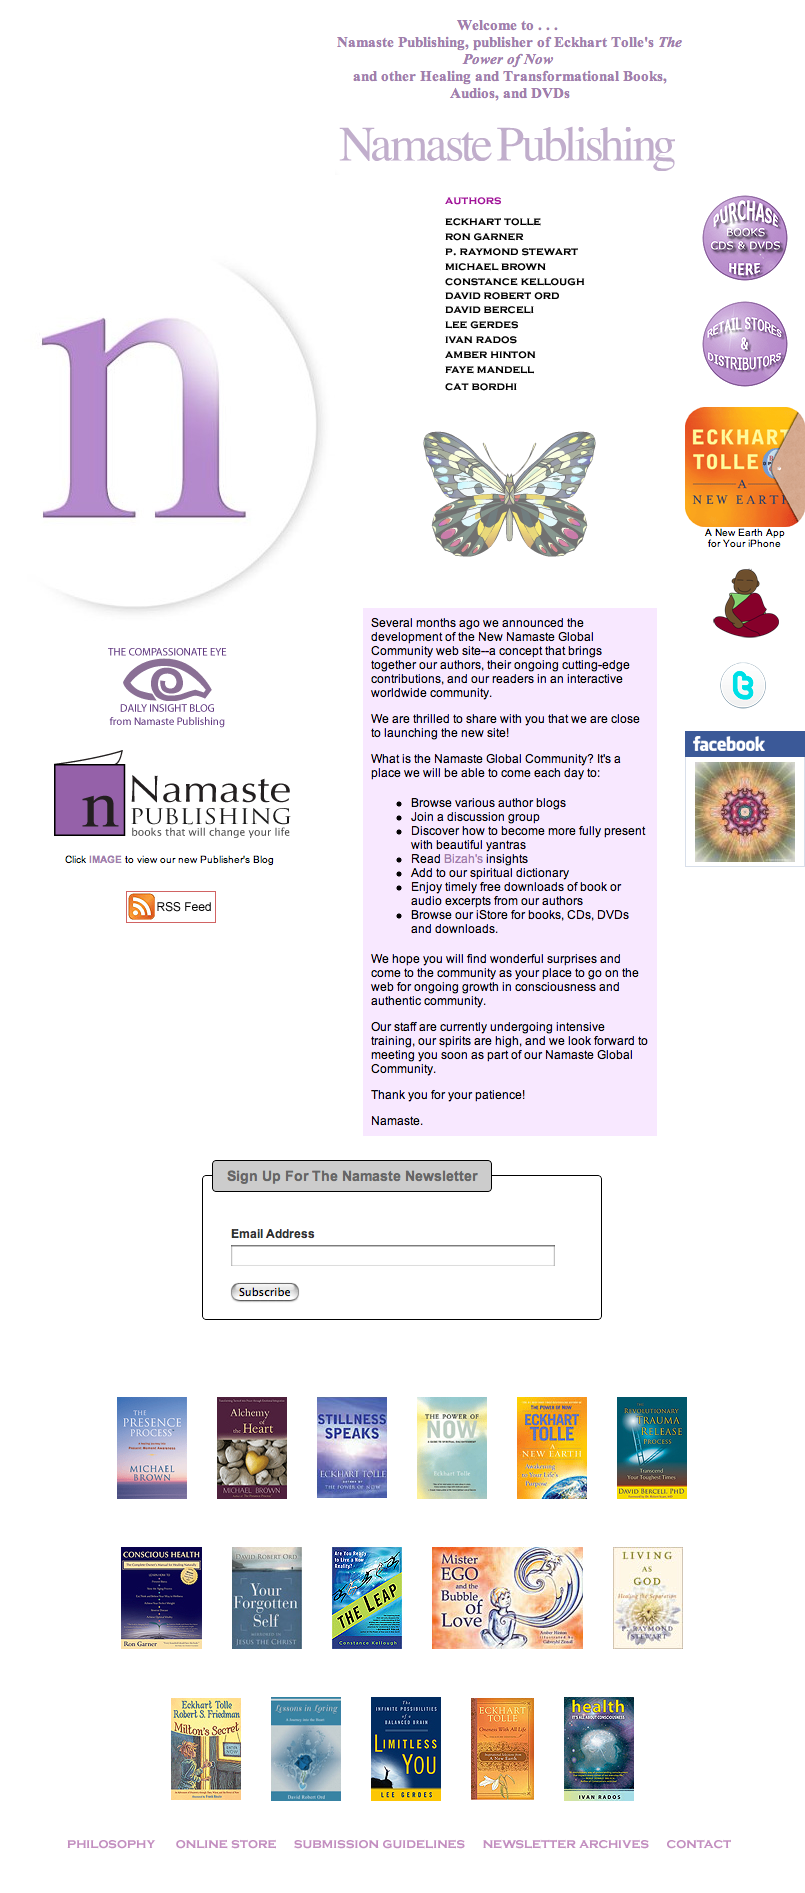 Namaste Publishing Launches New Website